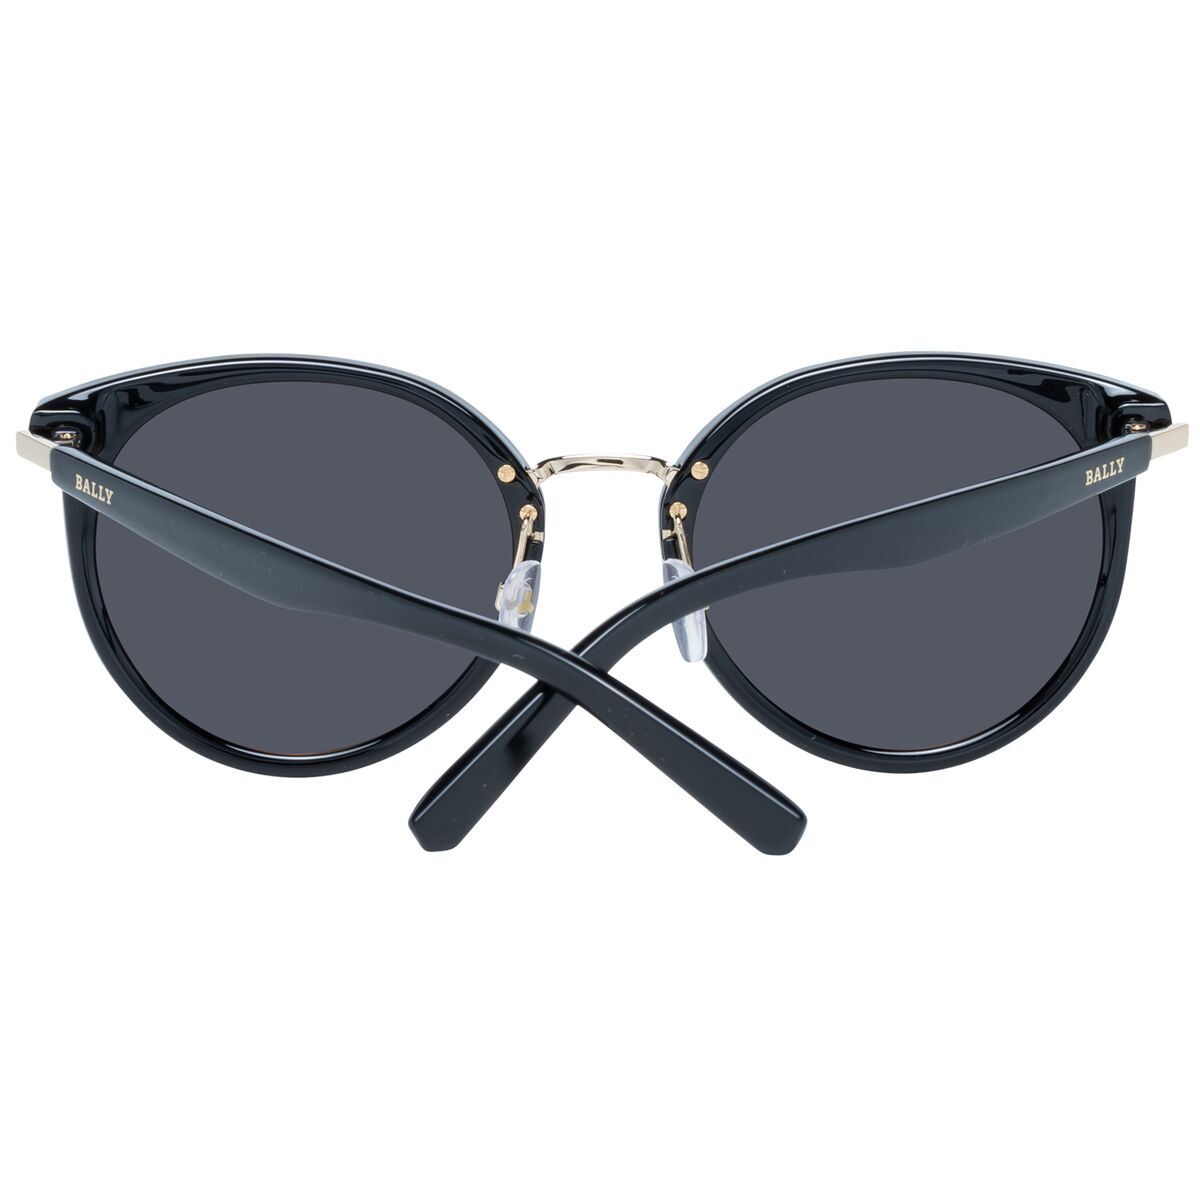 Kaufe Damensonnenbrille Bally BY0043-K 6501A bei AWK Flagship um € 114.00